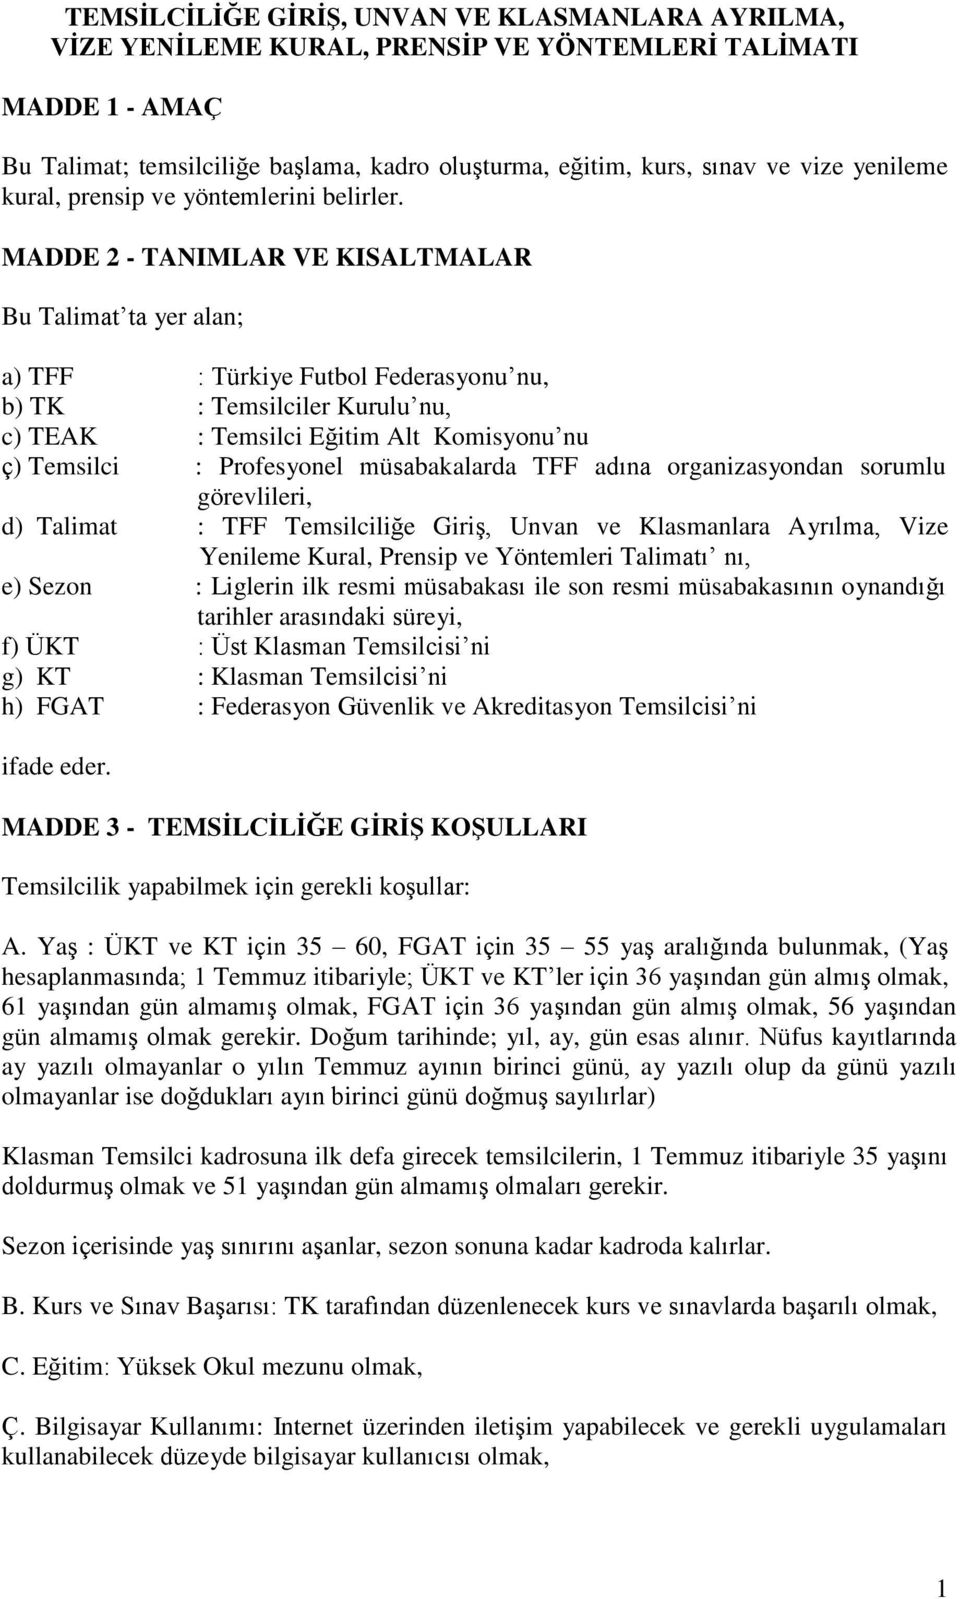 MADDE 2 - TANIMLAR VE KISALTMALAR Bu Talimat ta yer alan; a) TFF : Türkiye Futbol Federasyonu nu, b) TK : Temsilciler Kurulu nu, c) TEAK : Temsilci Eğitim Alt Komisyonu nu ç) Temsilci : Profesyonel